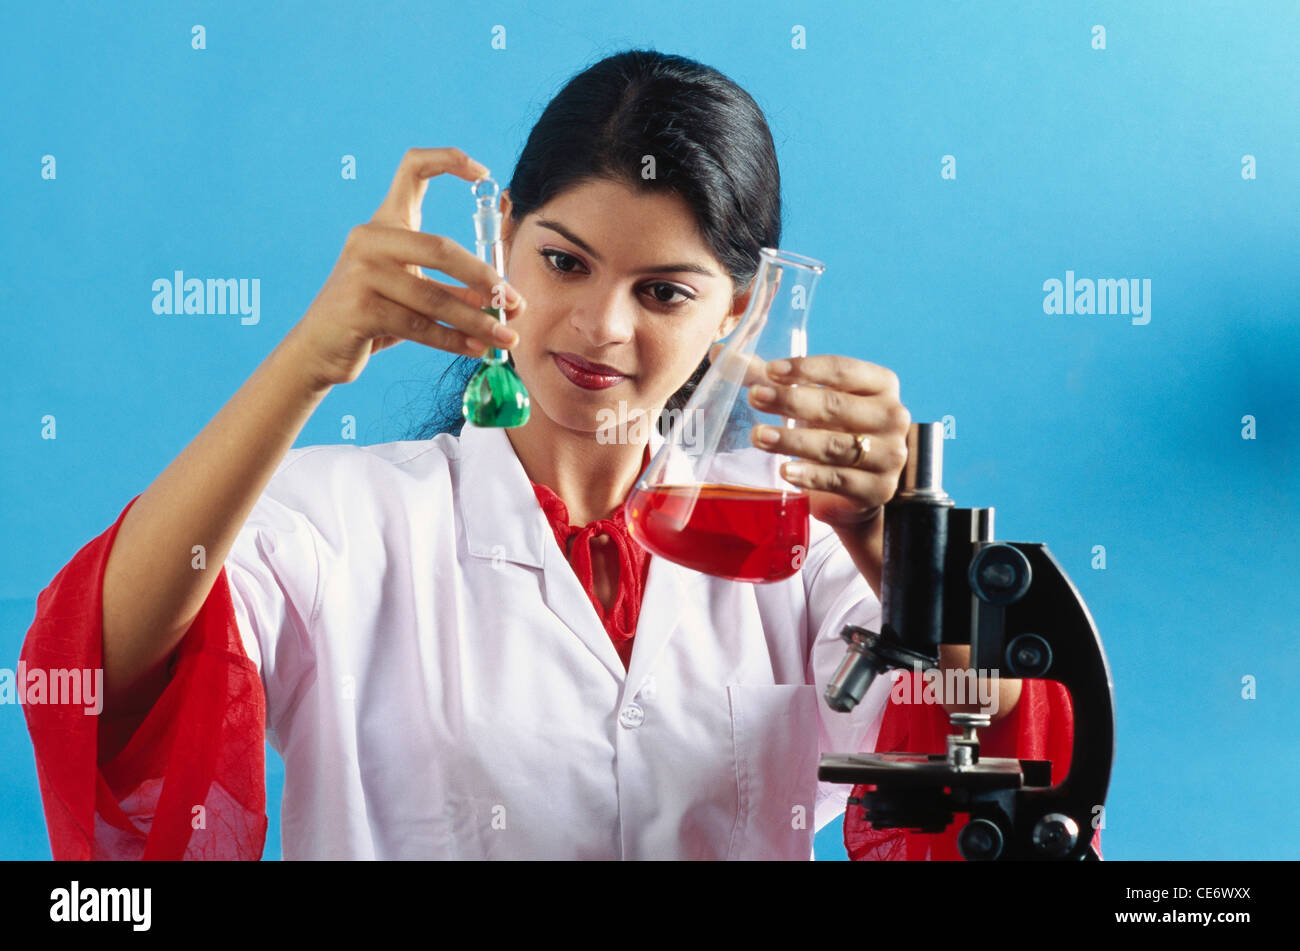 RMM 85318: Frau Laborant chemischen Forschung im Labor Indien Herr #579 Stockfoto